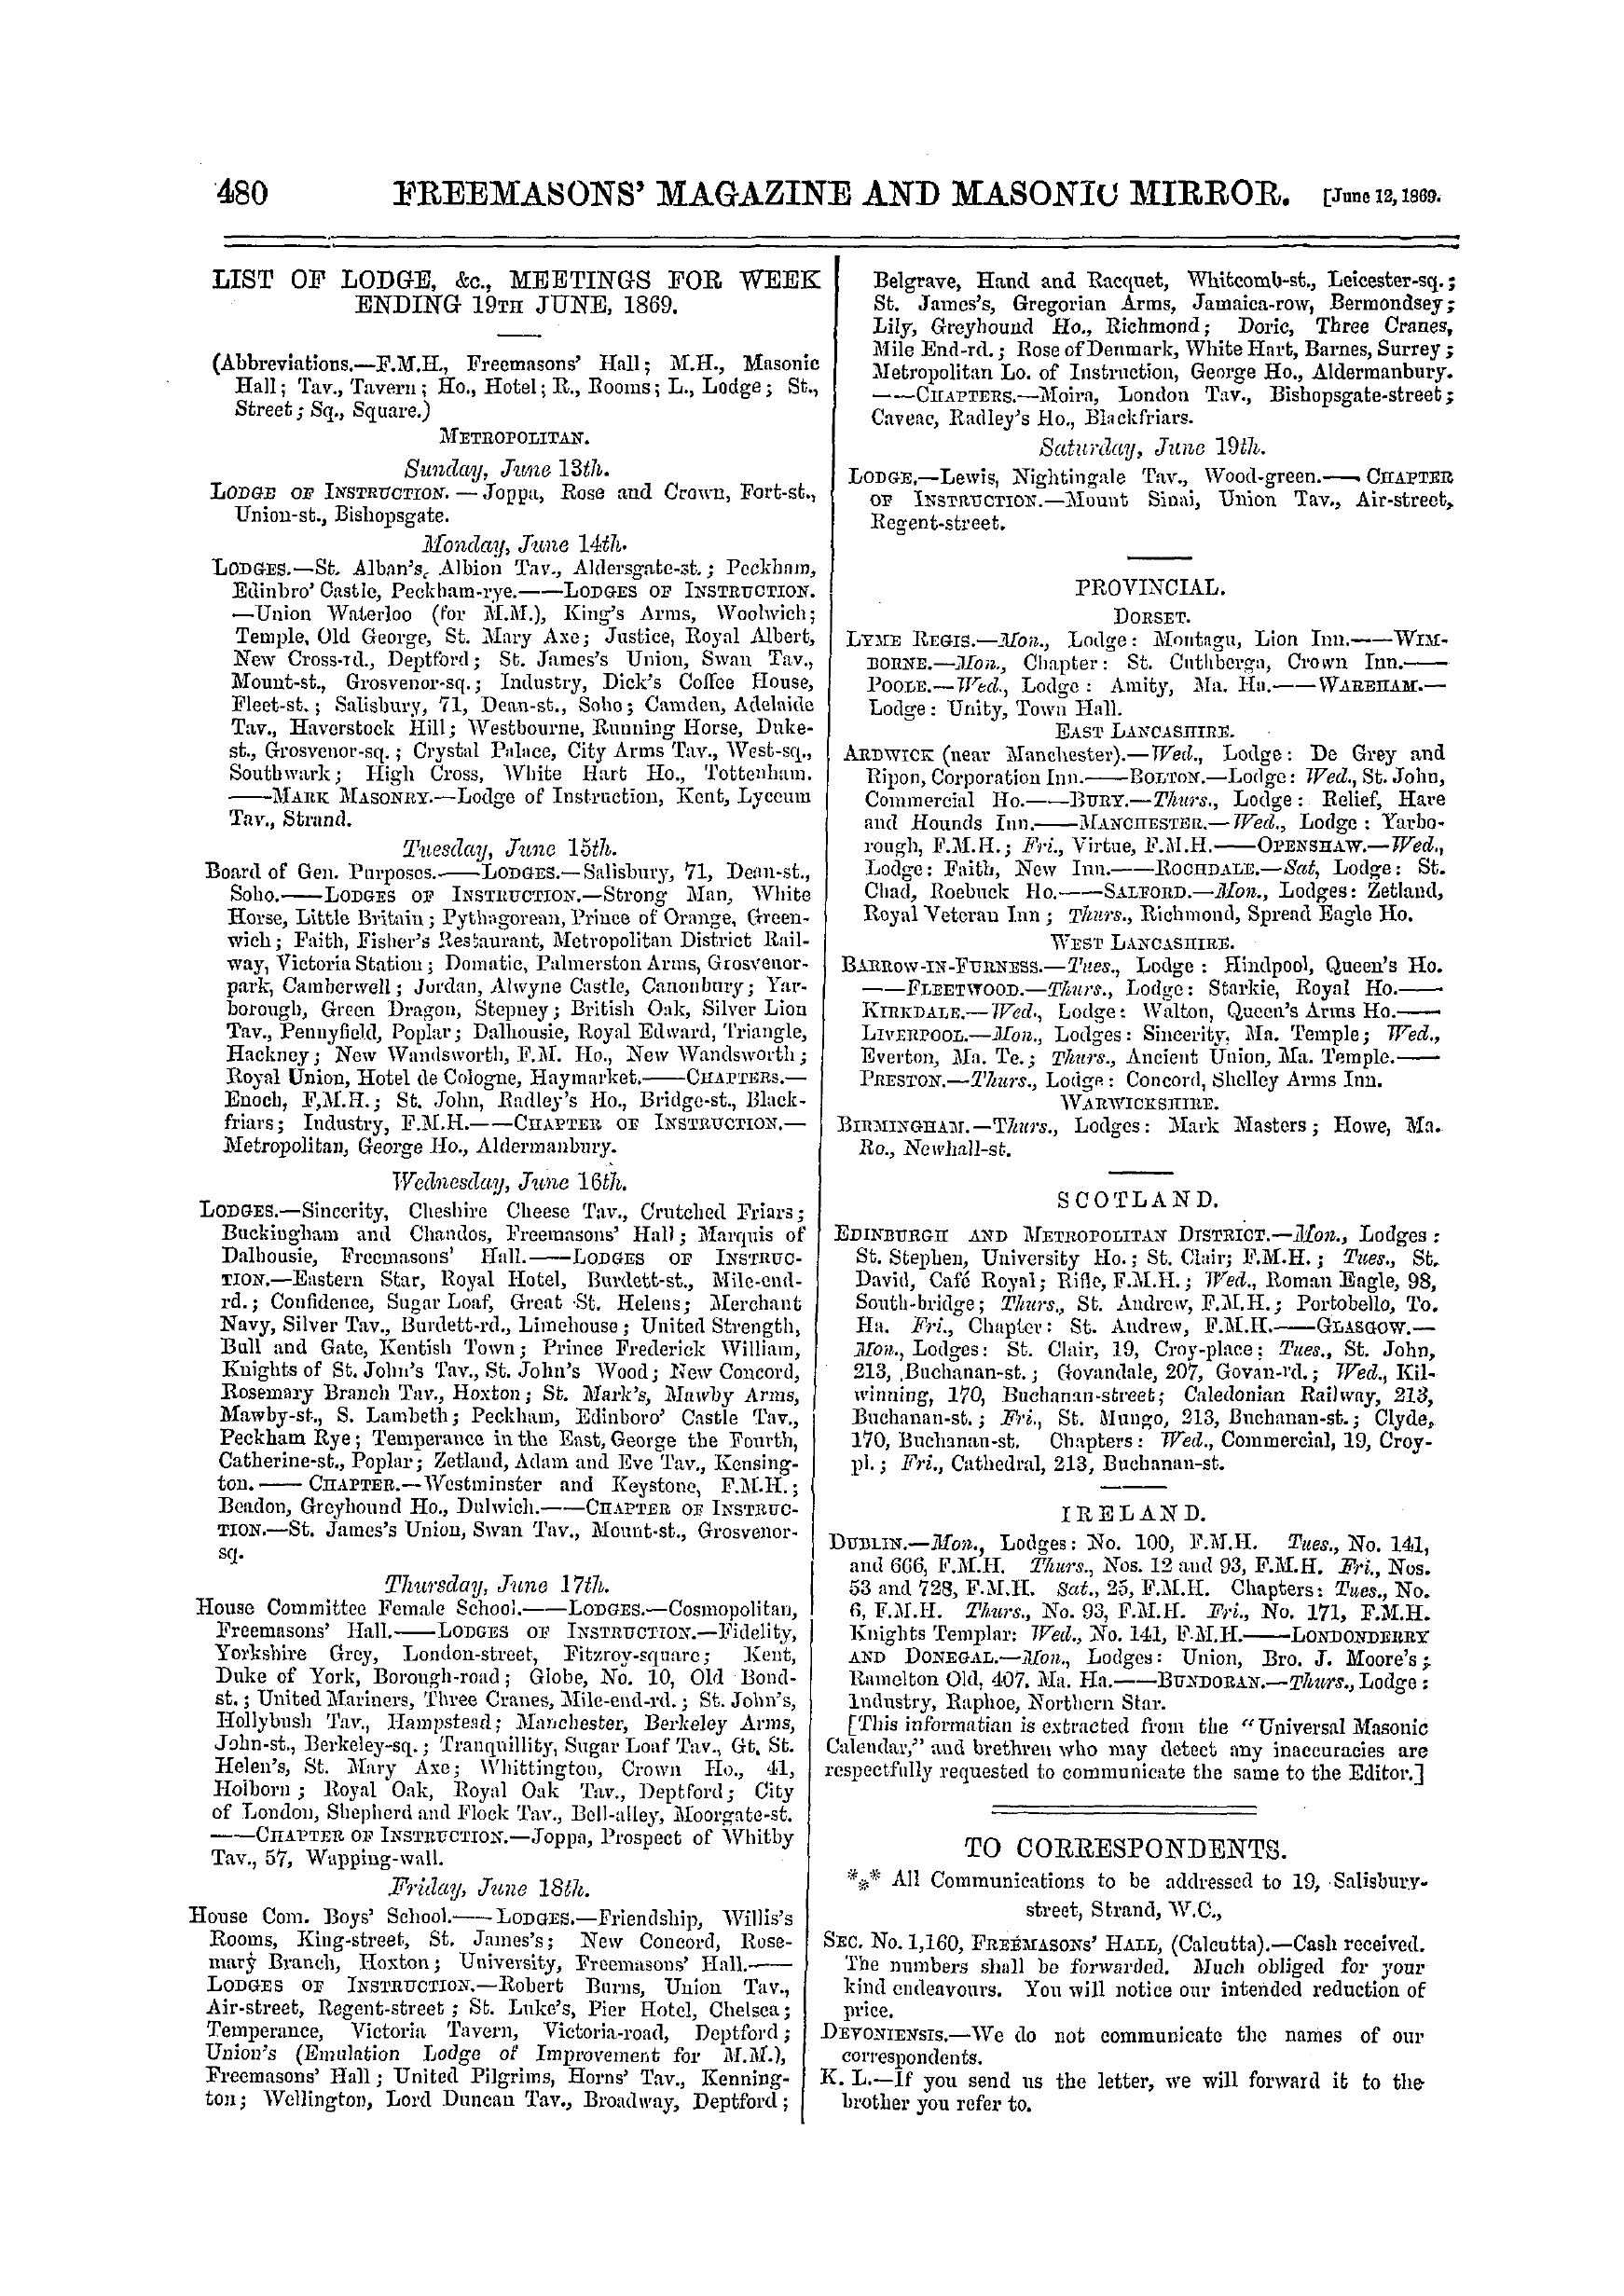 The Freemasons' Monthly Magazine: 1869-06-12: 20